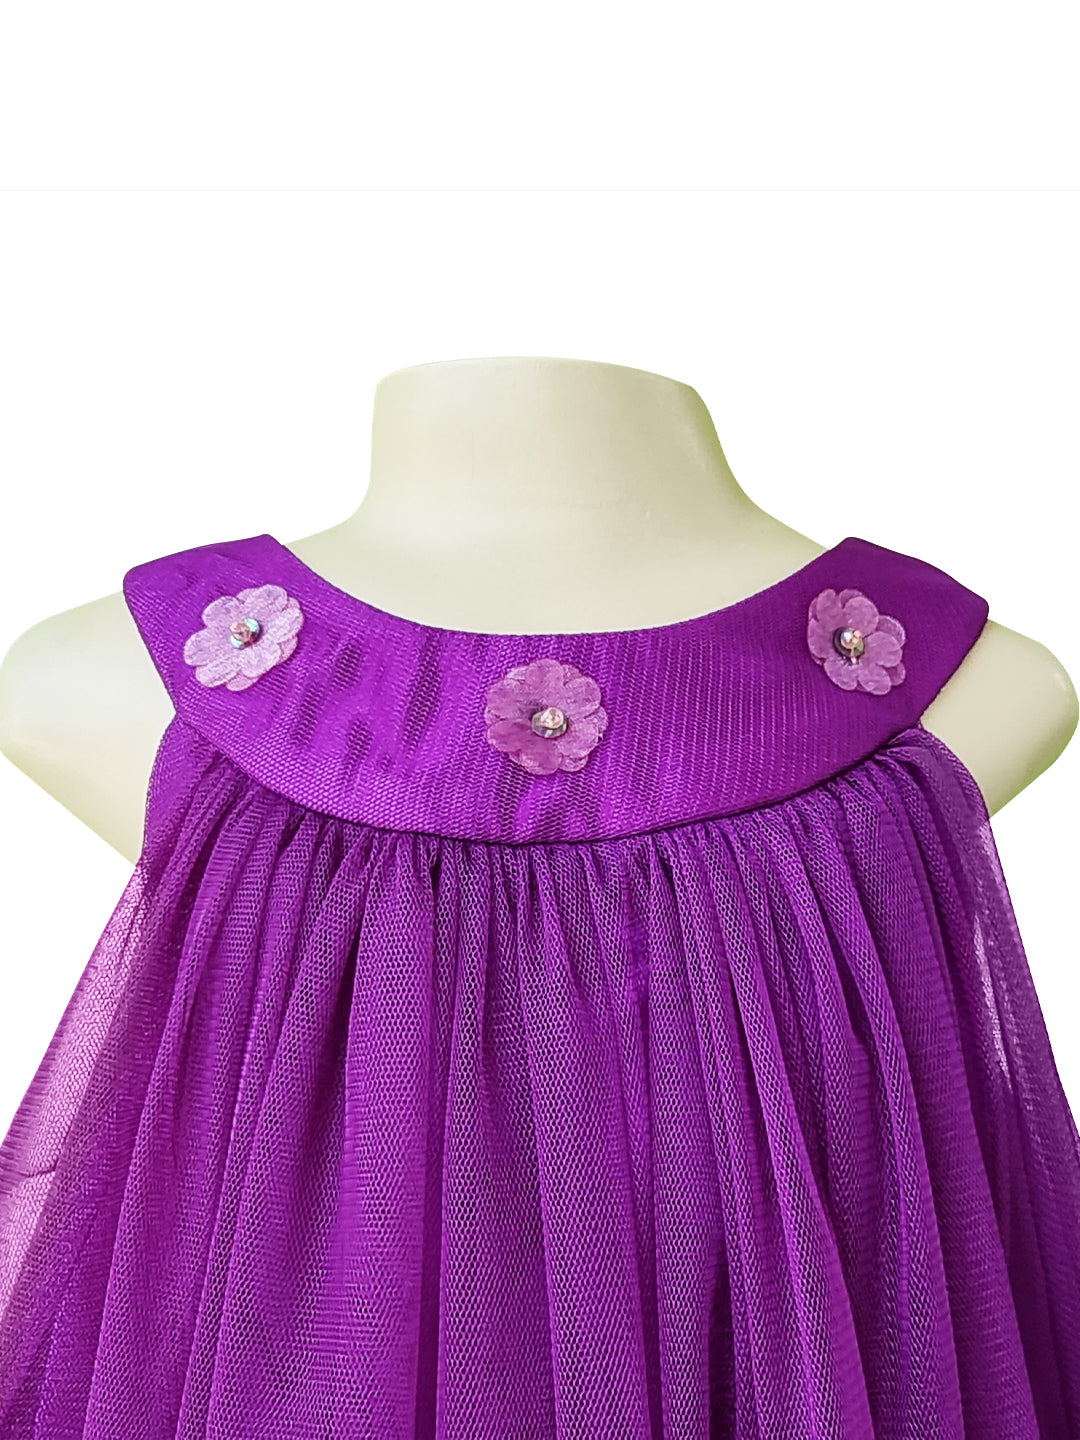 Kids Frock | Faye Purple Net Swing Dress